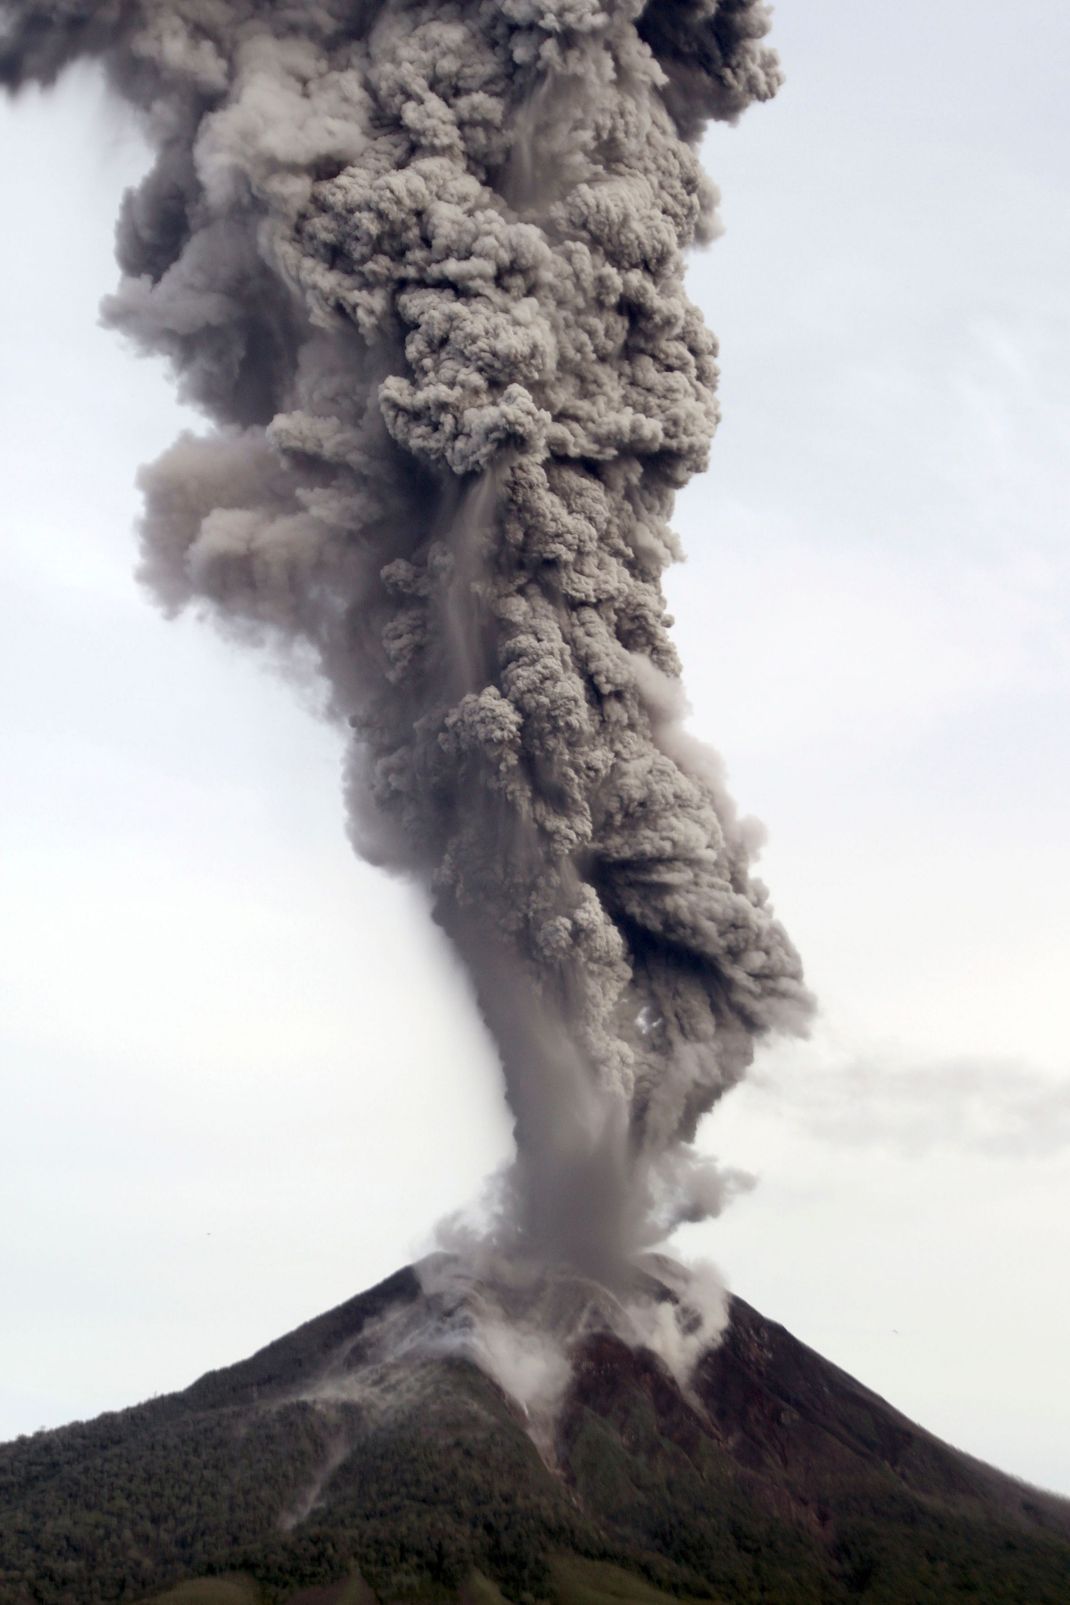 Der Vulkan Sinabung spuckte Asche und warf eine Aschewolke in die Atmosphäre, die mehrere Kilometer lang war.